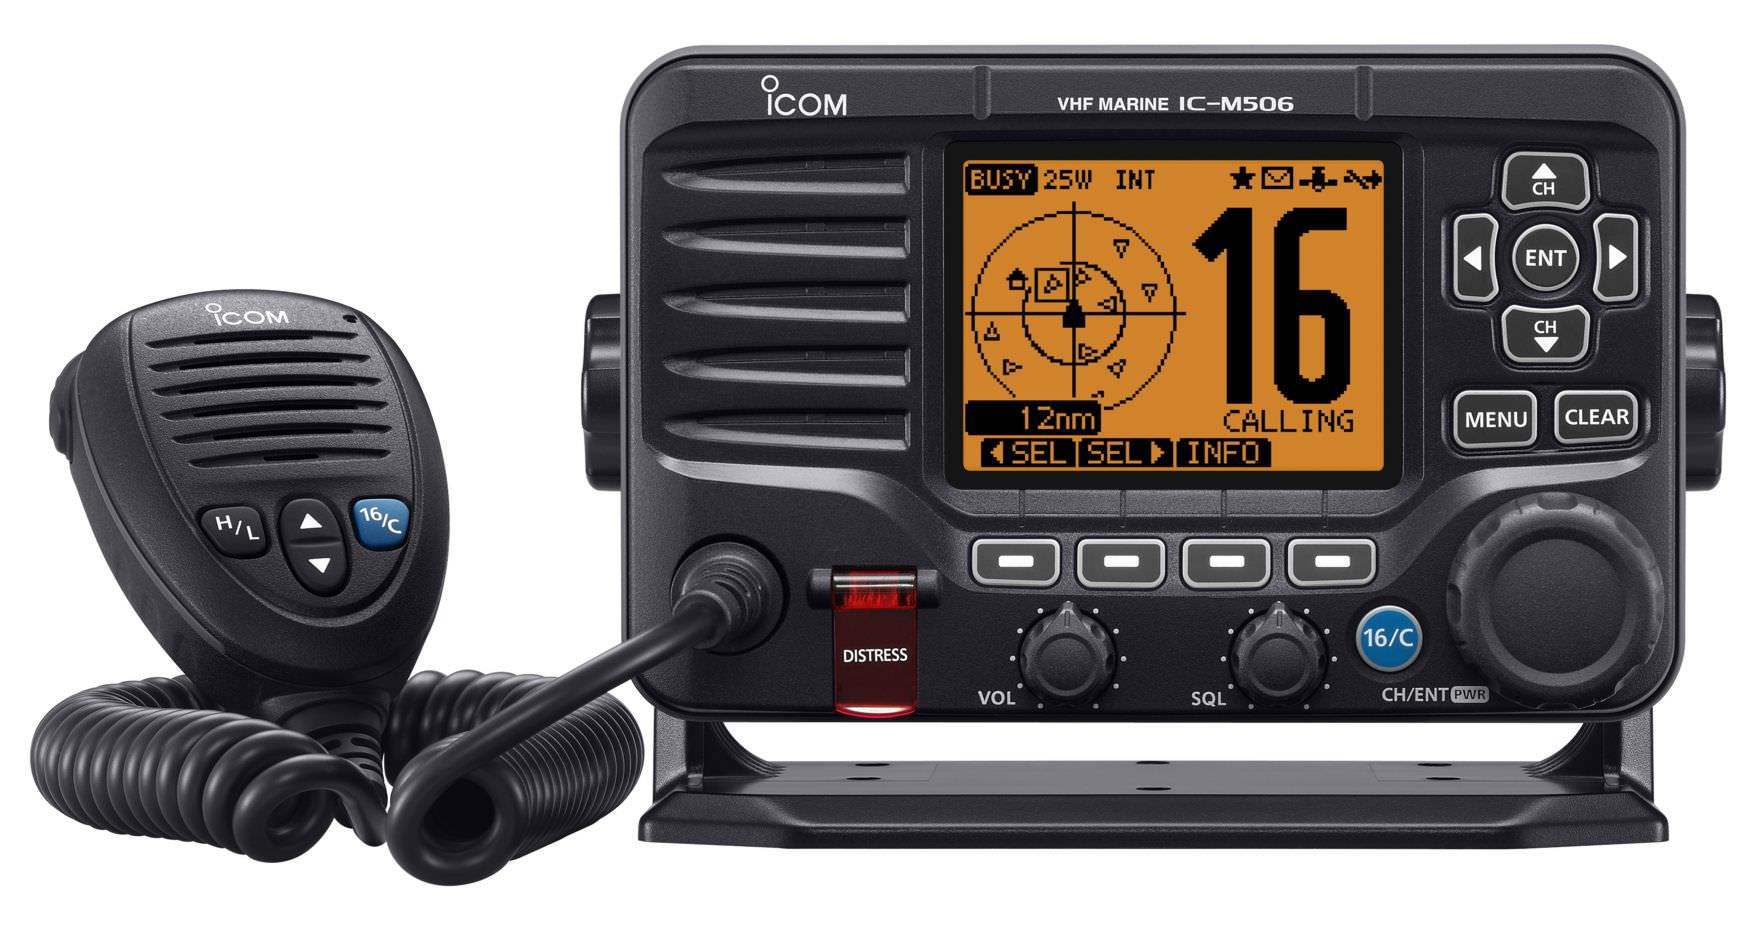 Gut aber komplett? Moderne UKW-Radios benötigen eine MMSI-Nummer und die Vernetzung mit einem GPS, um die DSC-Fähigkeiten voll auszuspielen.